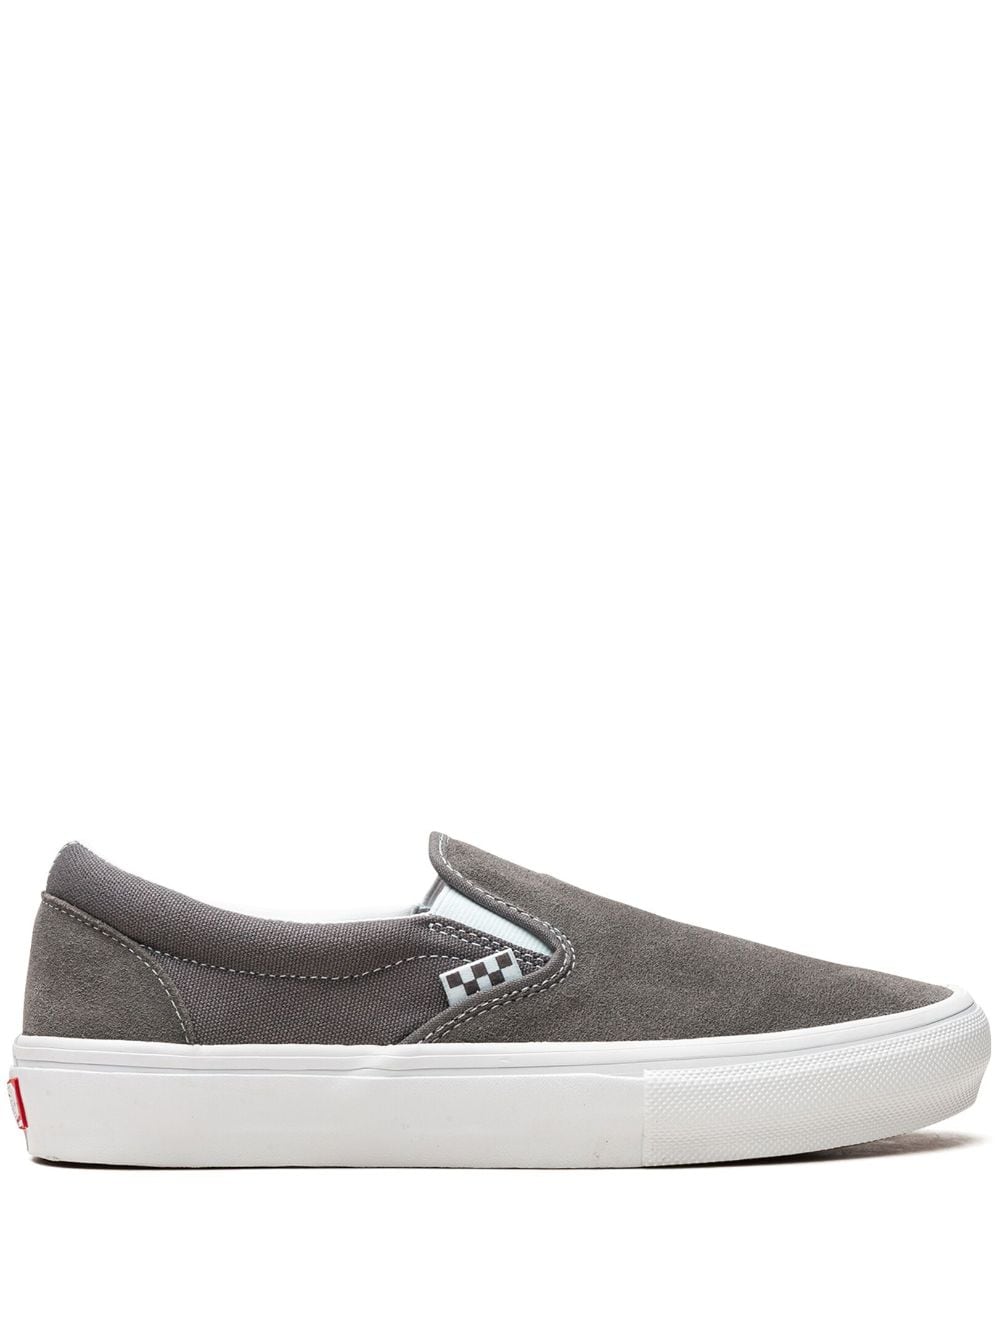 Vans Skate Slip-On "Grey/White" sneakers von Vans